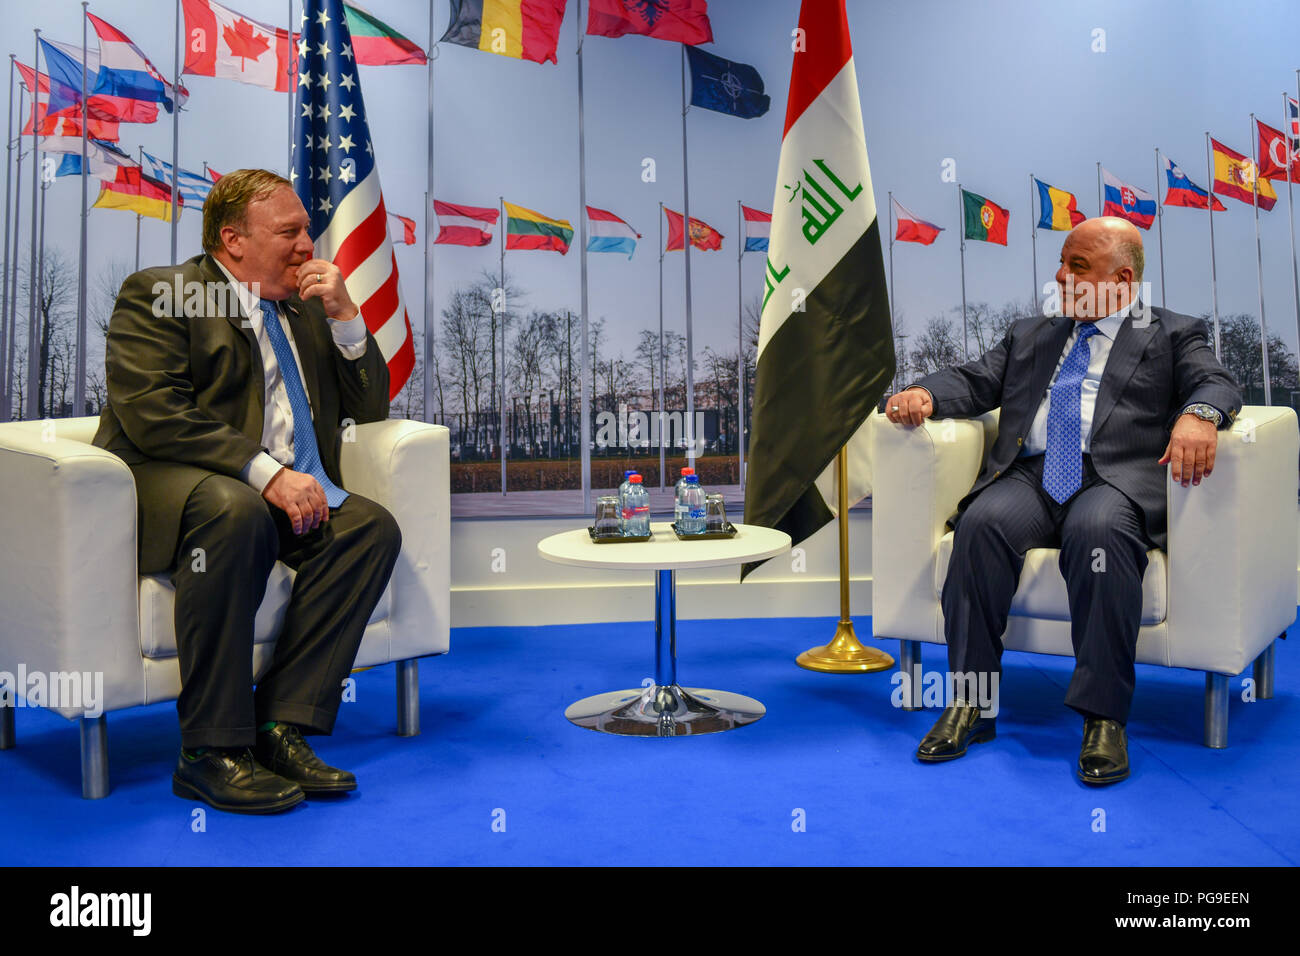 Us-Staatssekretär Michael R. Pompeo trifft sich mit irakischen Ministerpräsidenten Haider al-Abadi während einer Sitzung zur Seite ziehen, während der NATO-Gipfel in Brüssel, Belgien, am 12. Juli 2018. Stockfoto